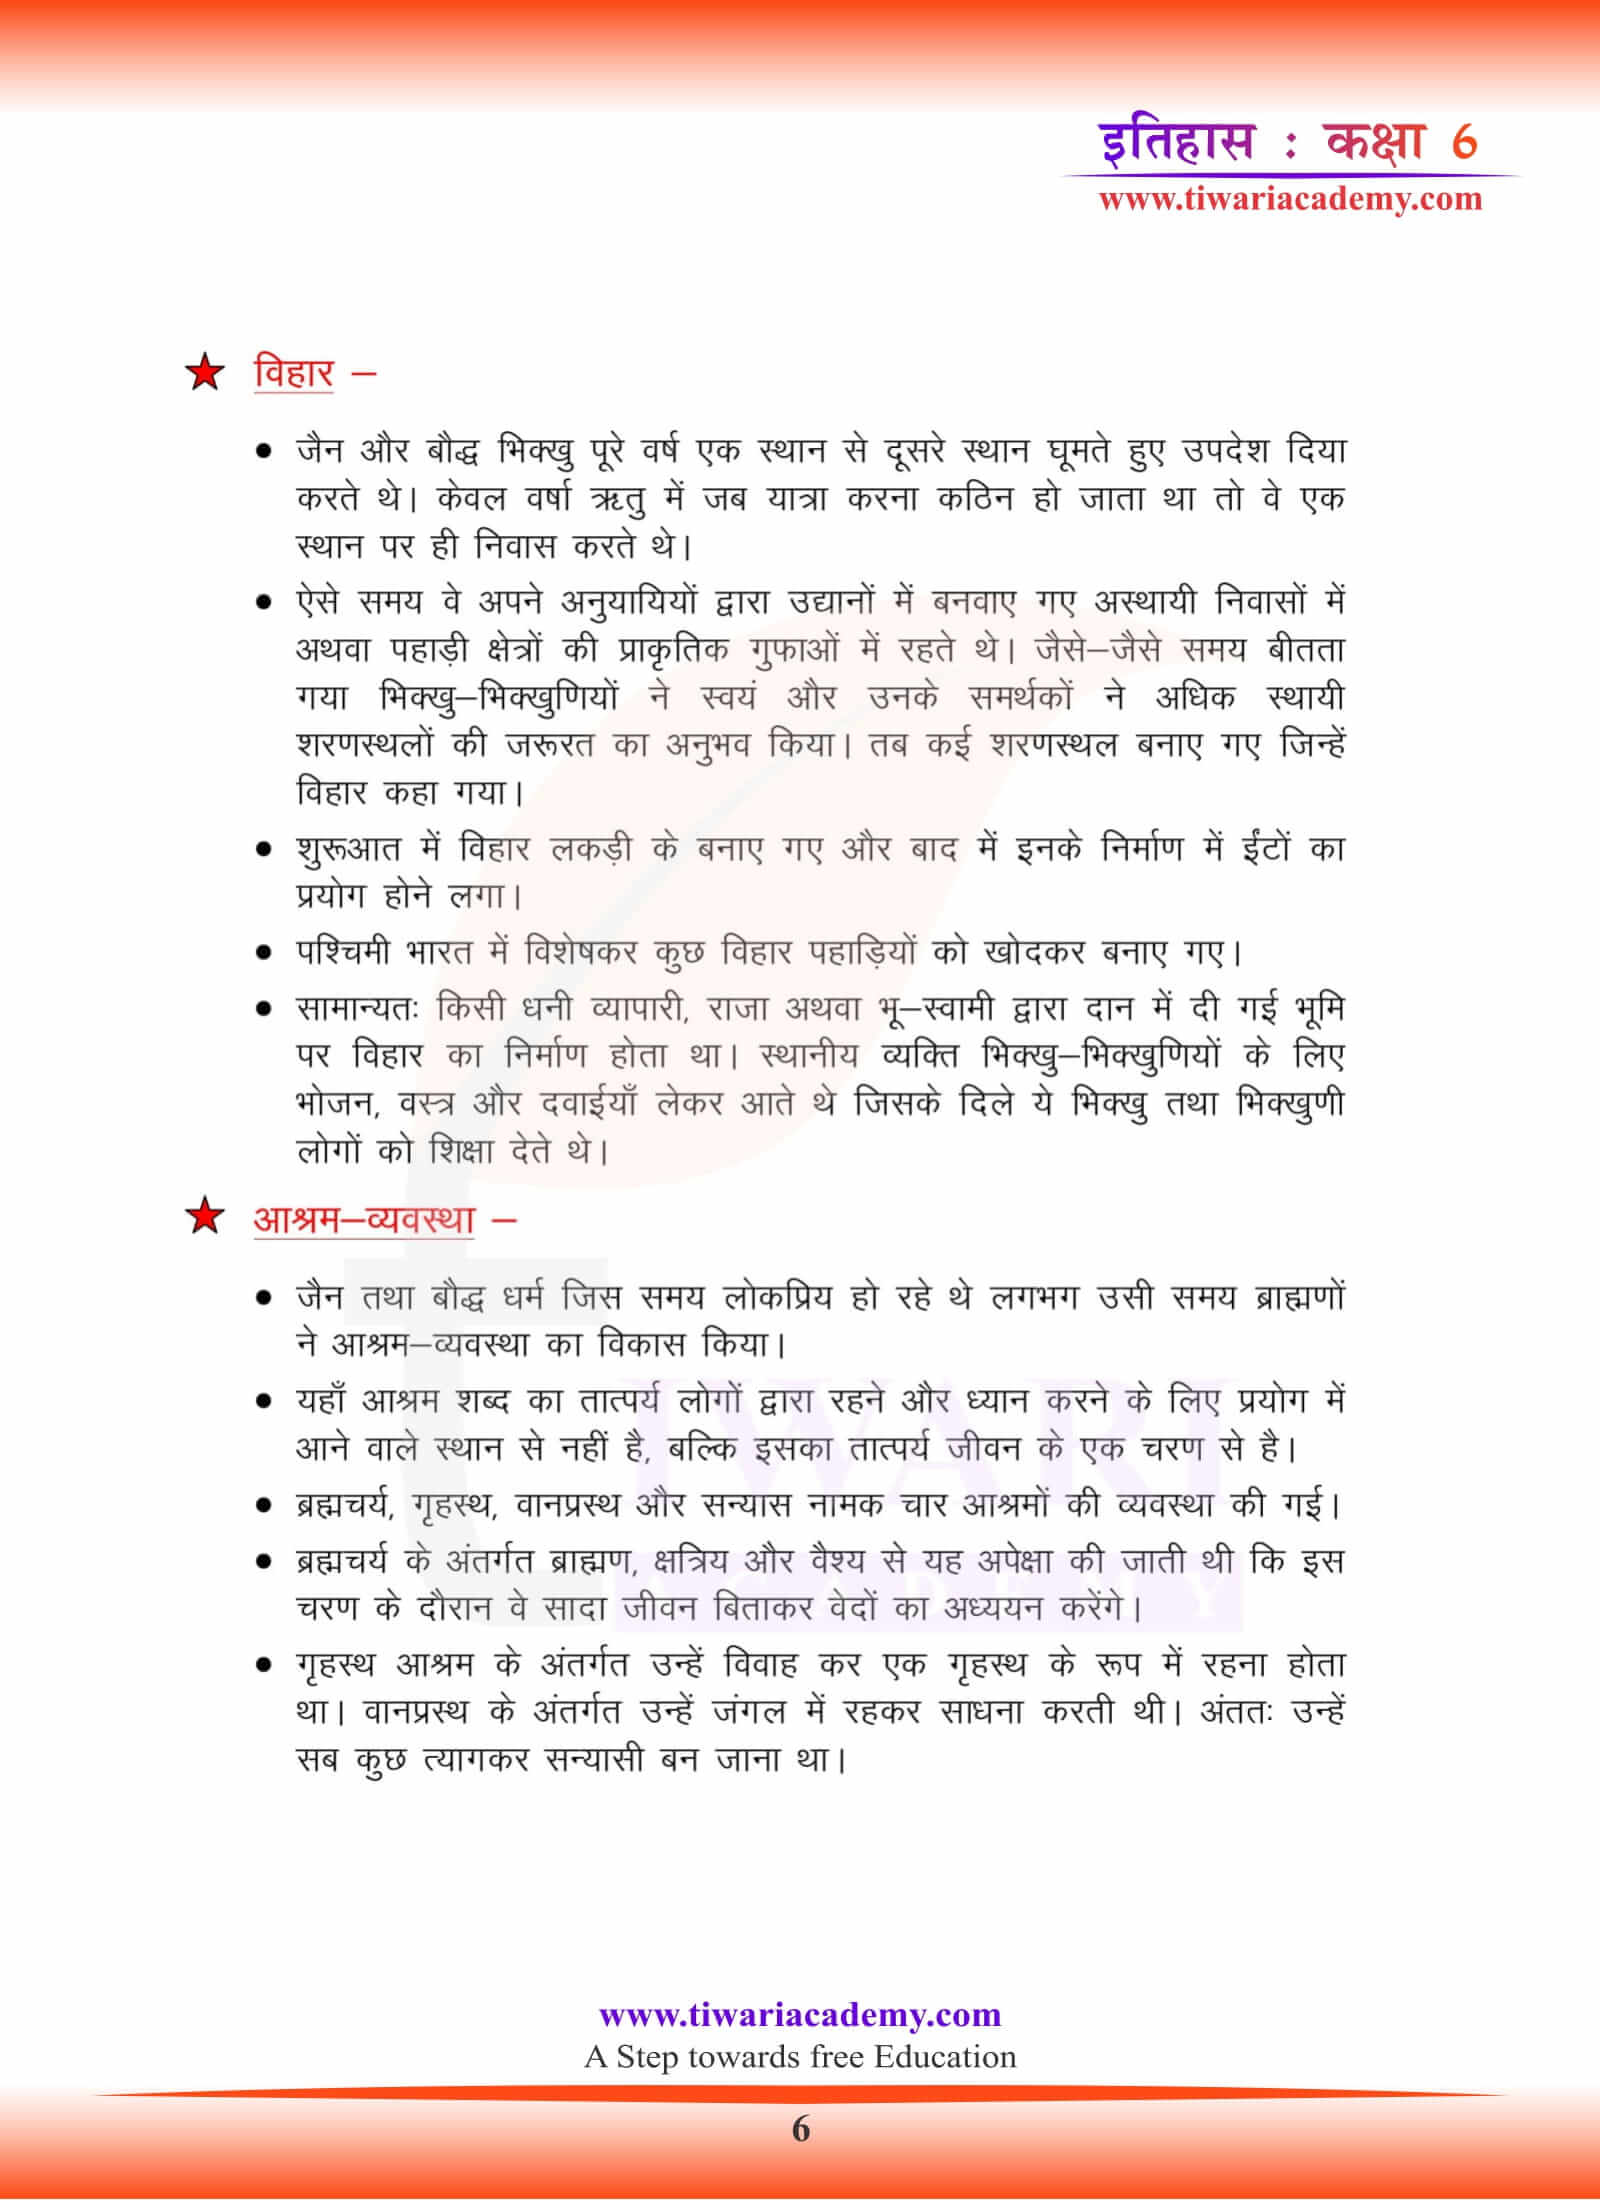 कक्षा 6 इतिहास अध्याय 6 गाइड हिंदी में